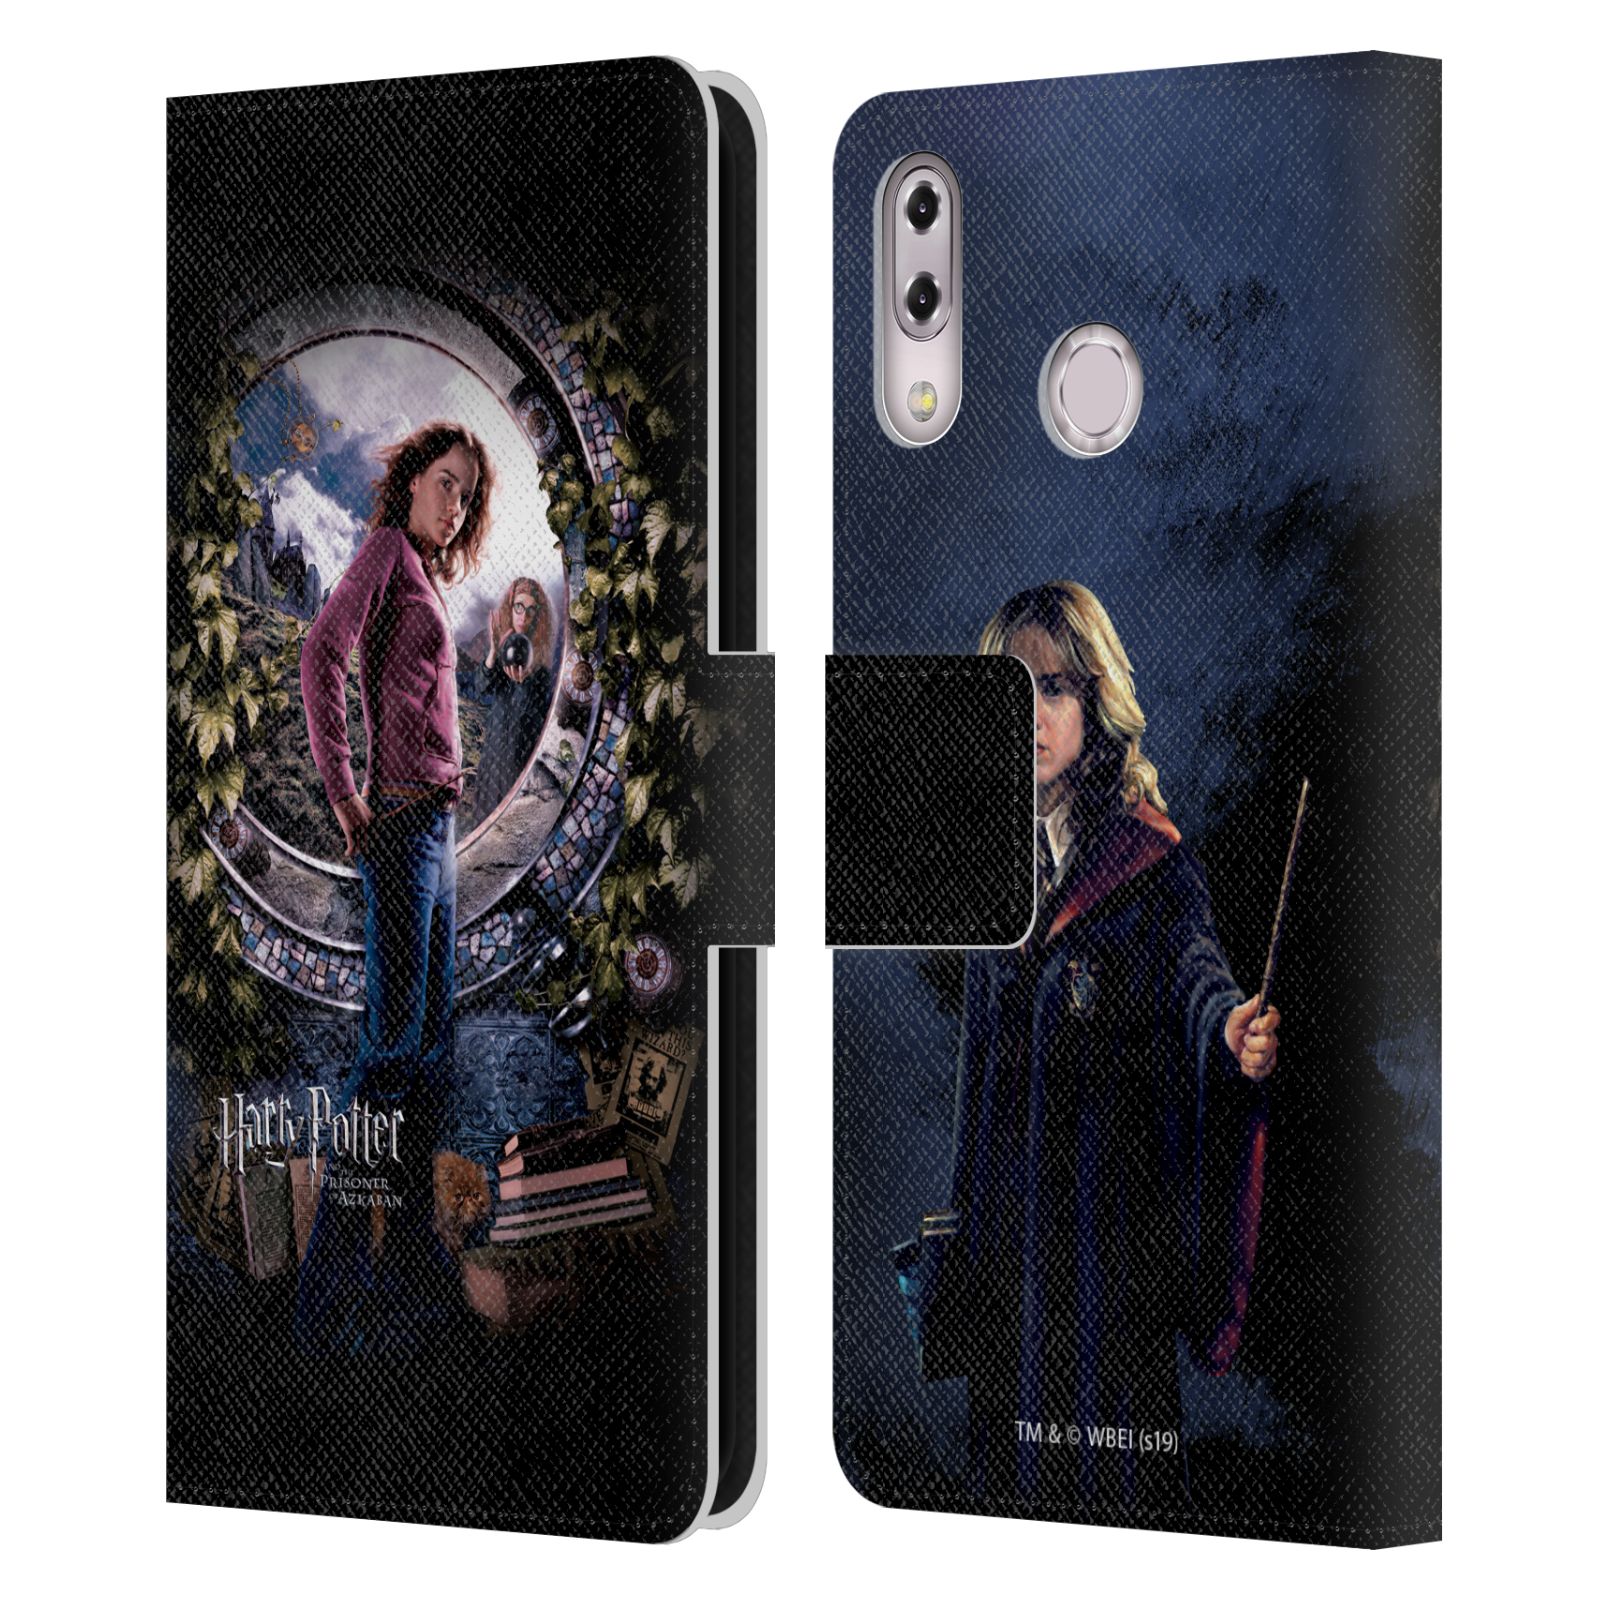 Pouzdro na mobil Asus Zenfone 5z ZS620KL, 5 ZE620KL  - HEAD CASE - Harry Potter - Vězeň z Azkabanu - Hermiona